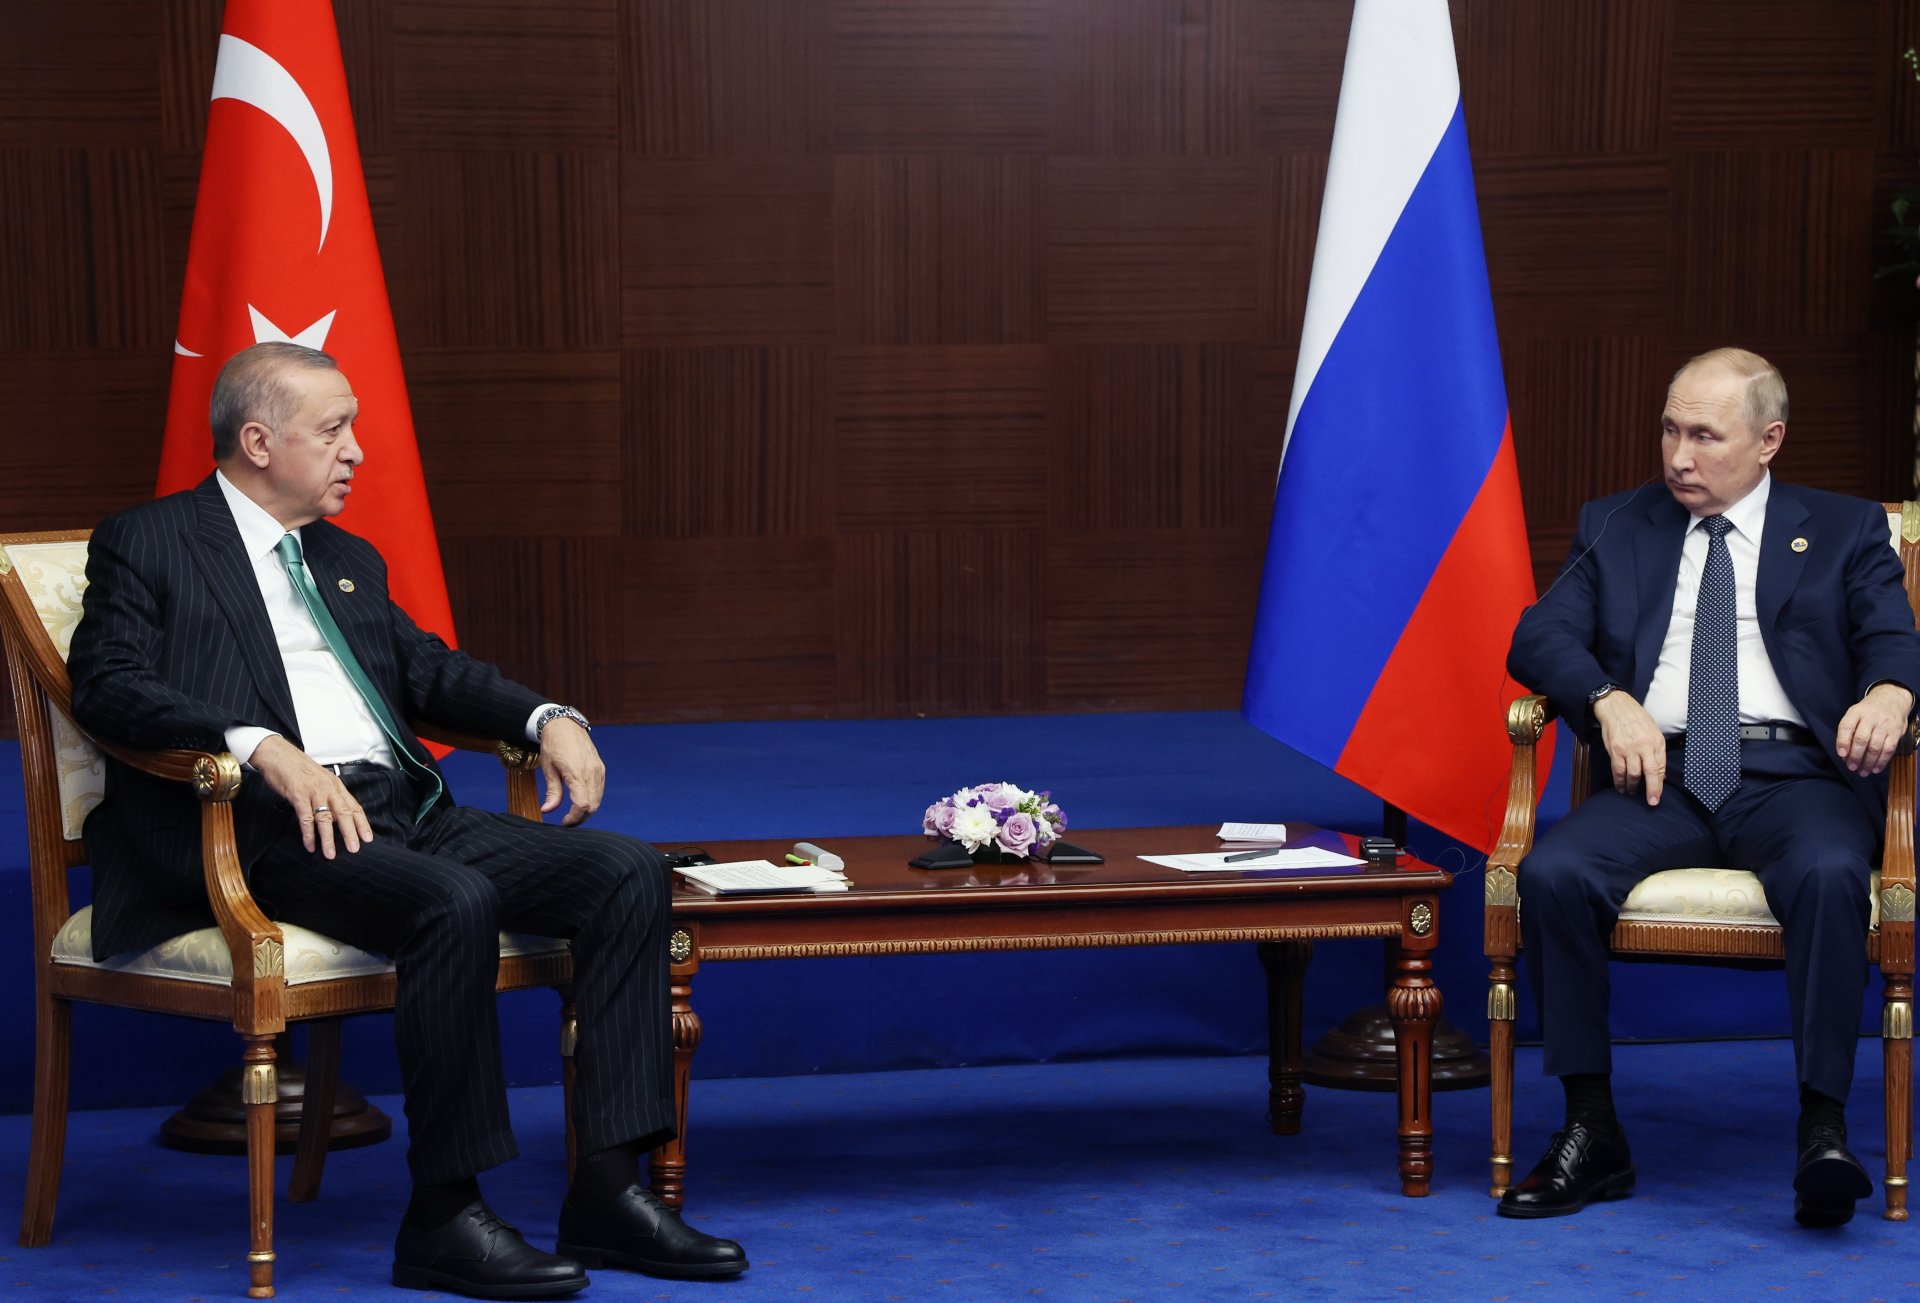 Президентите на Турция и Русия - Реджеп Тайип Ердоган и Владимир Путин, разговарят по време на наскоро проведен форум в Астана